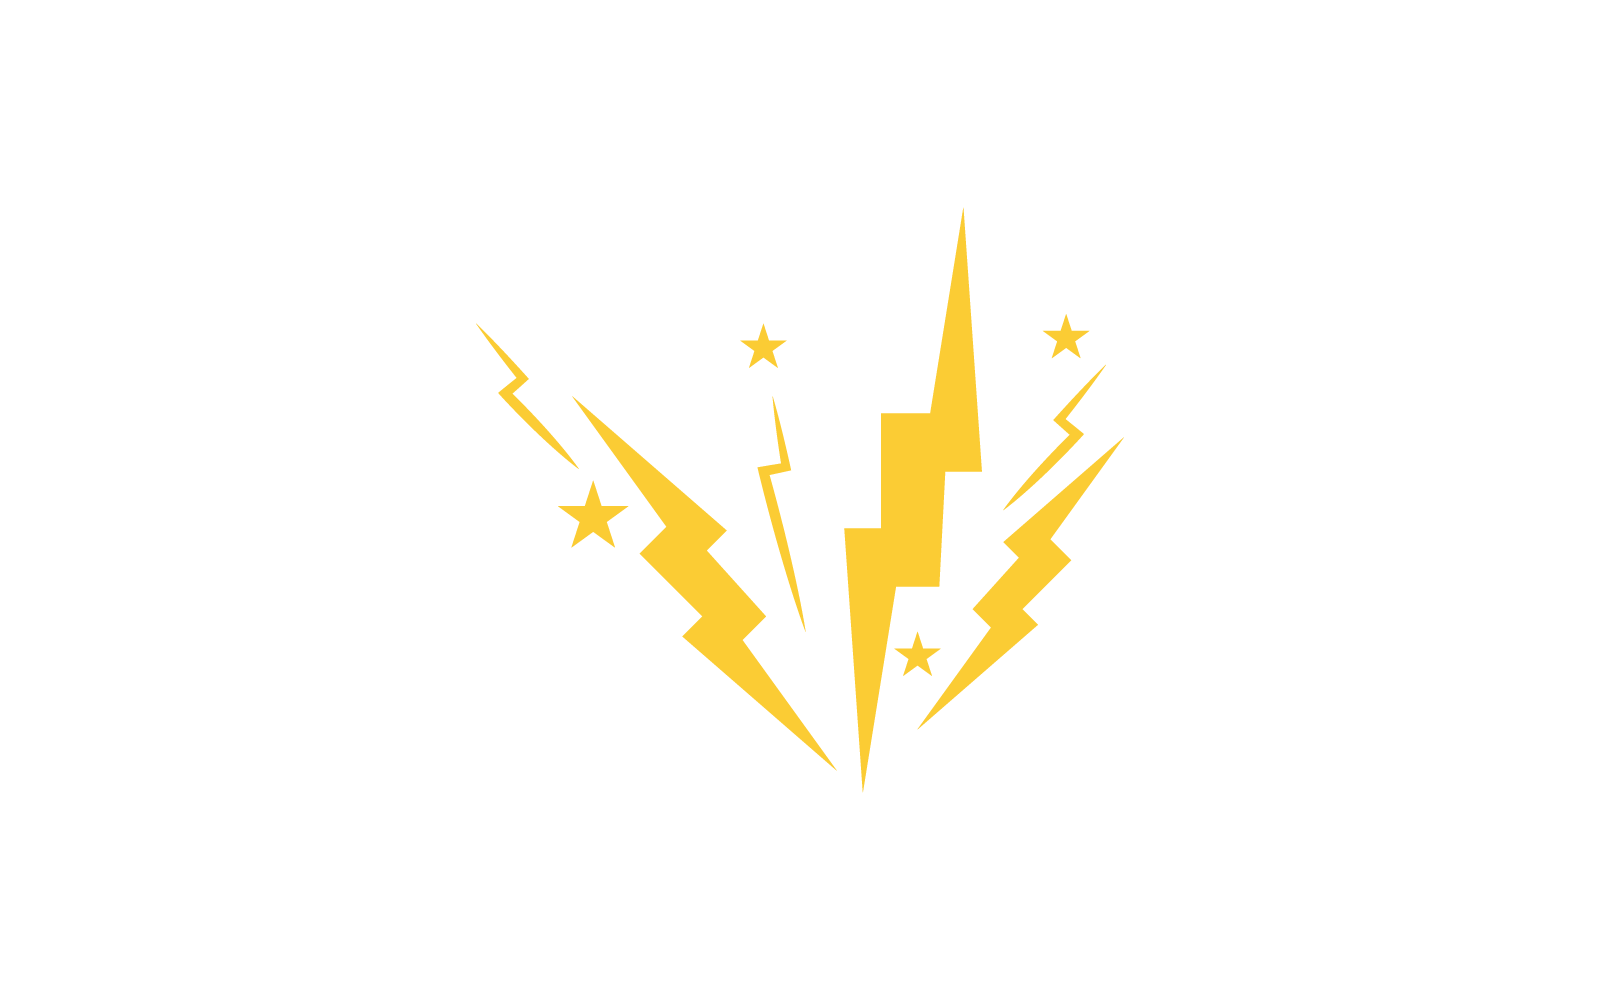 Power lightning power energy logo vector flat design